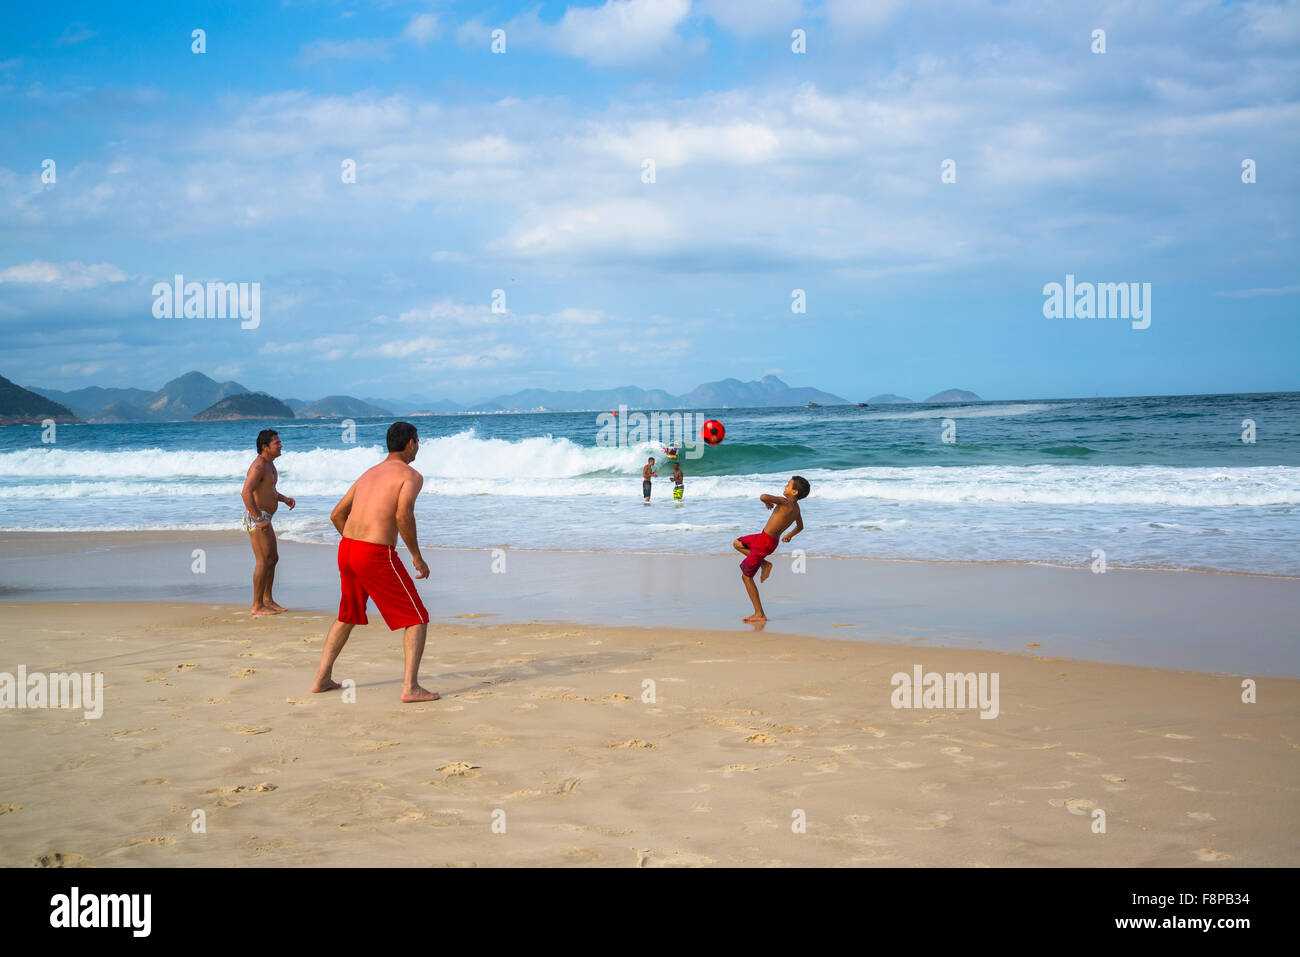 La plage de Copacabana, jouer au football, Rio de Janeiro, Brésil Banque D'Images